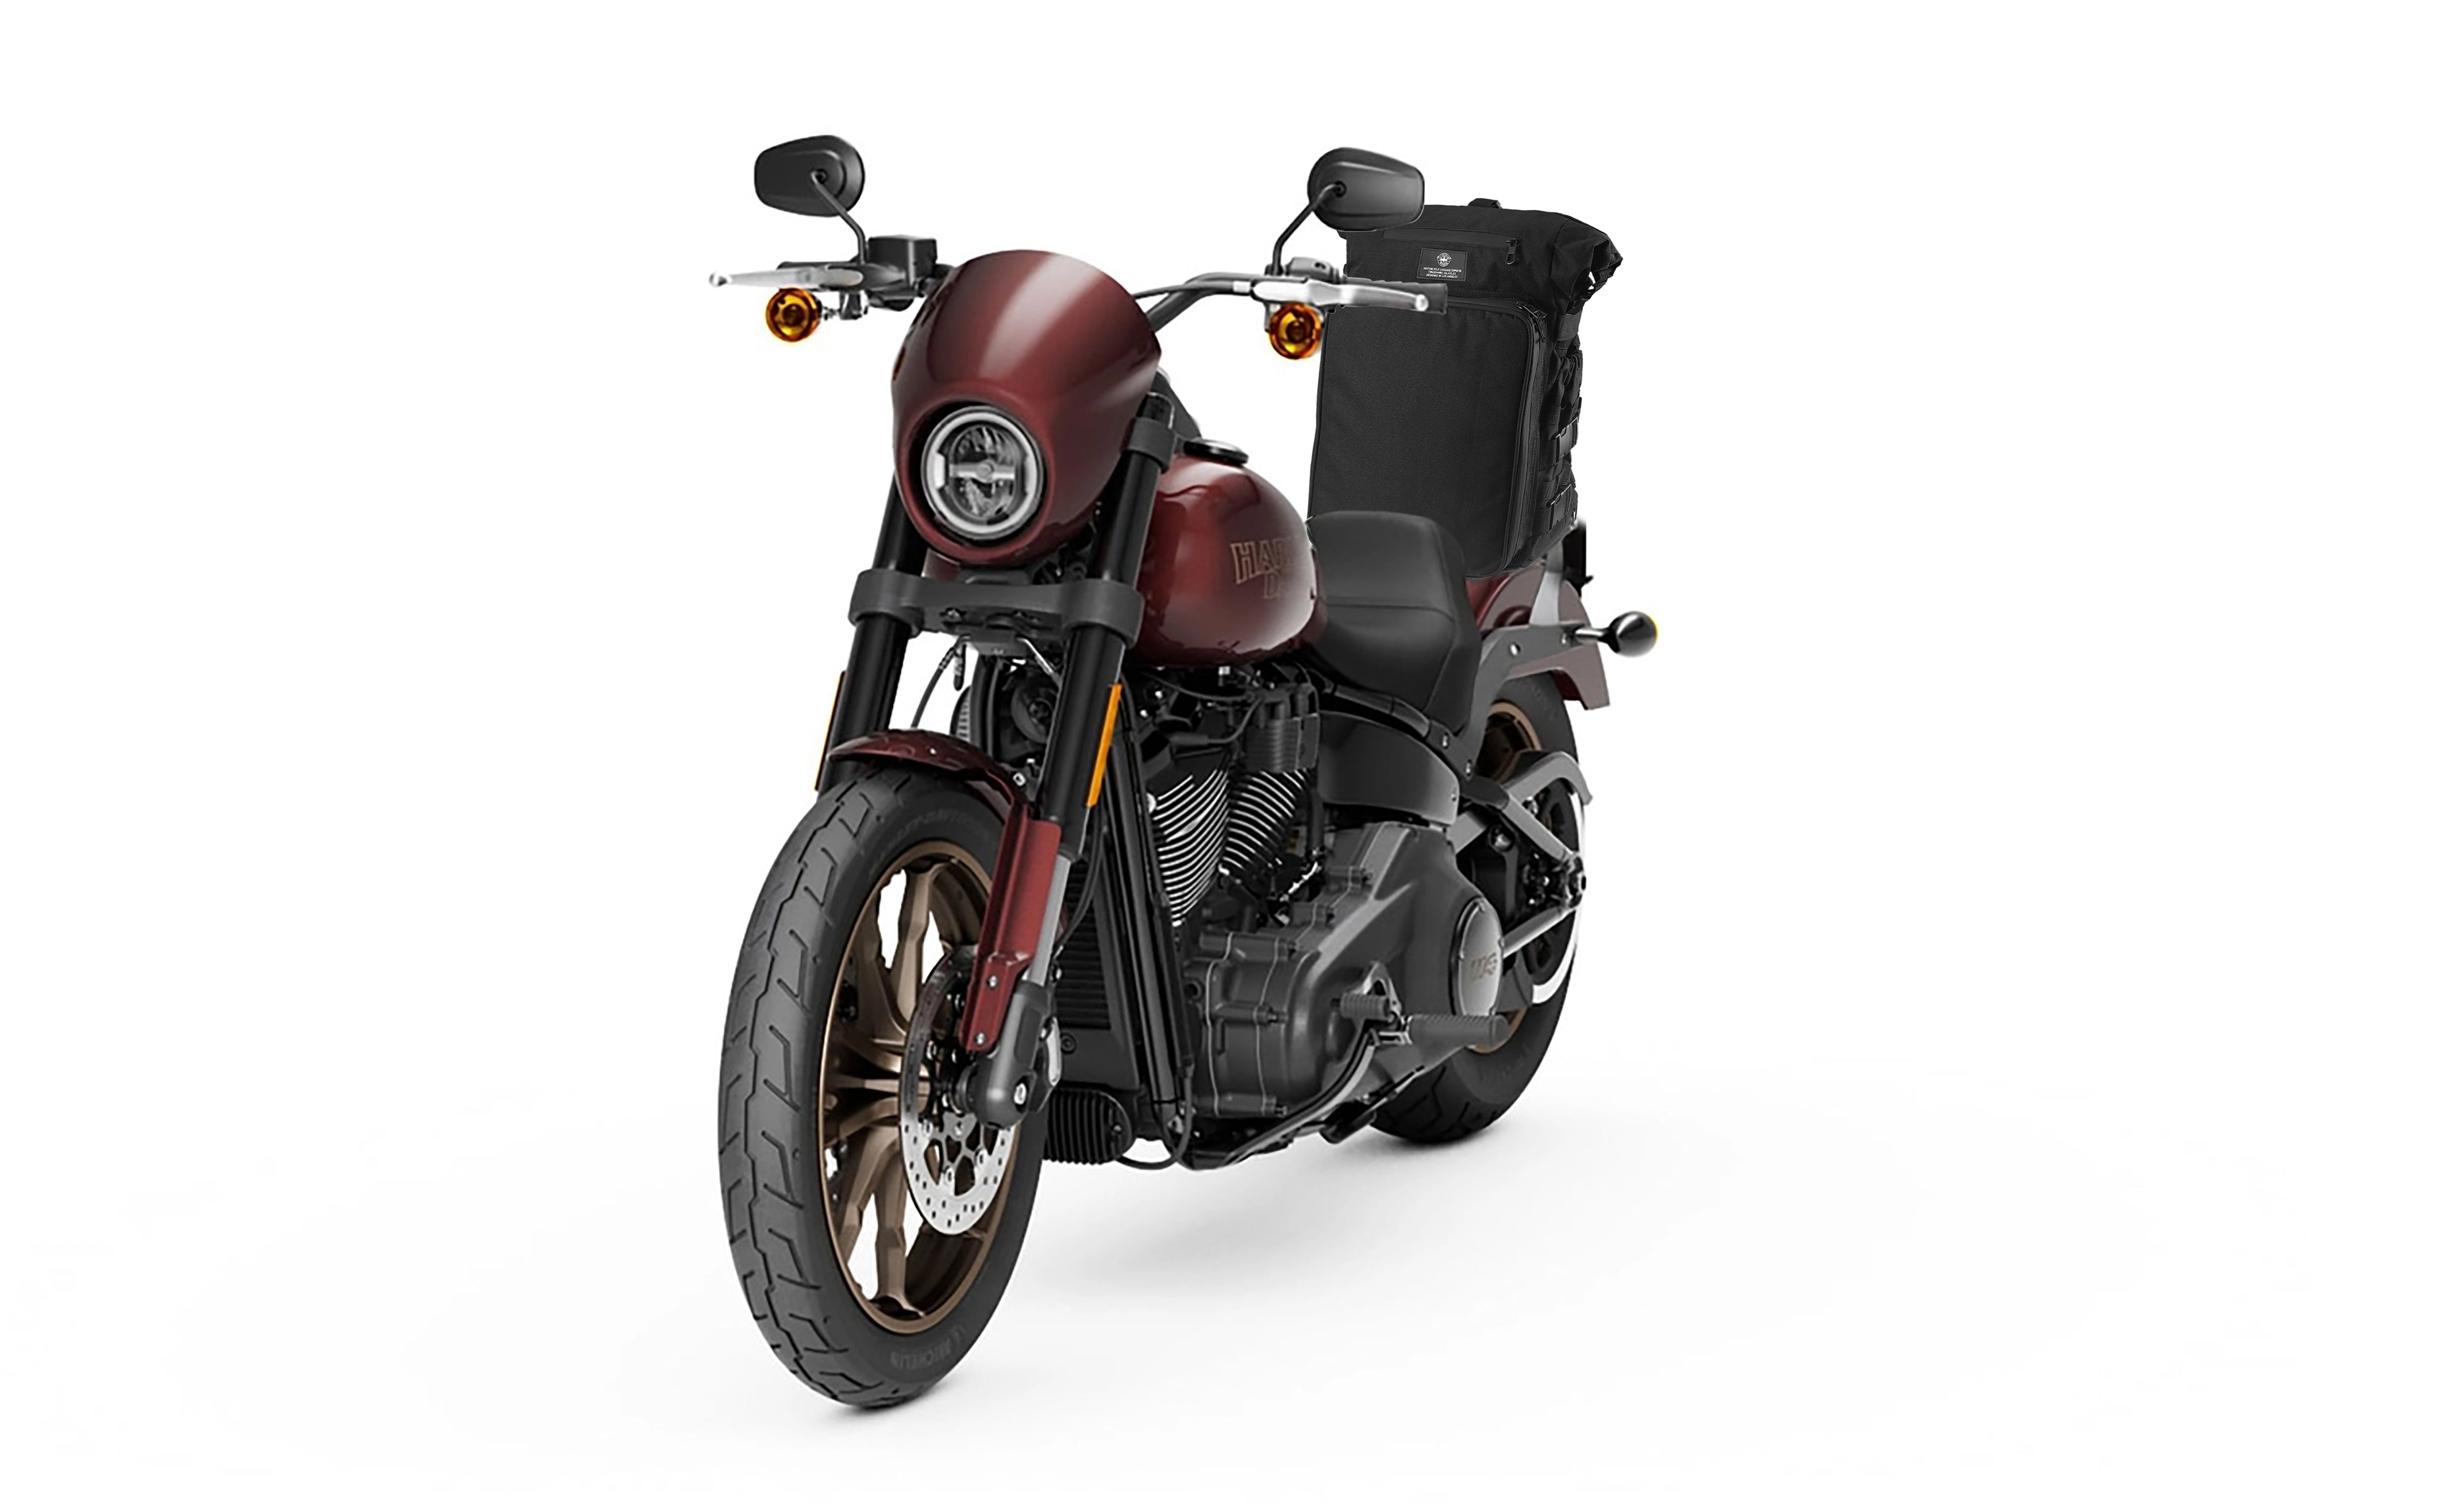 Viking Renegade XL Suzuki Motorcycle Sissy Bar Bag Bag on Bike View @expand